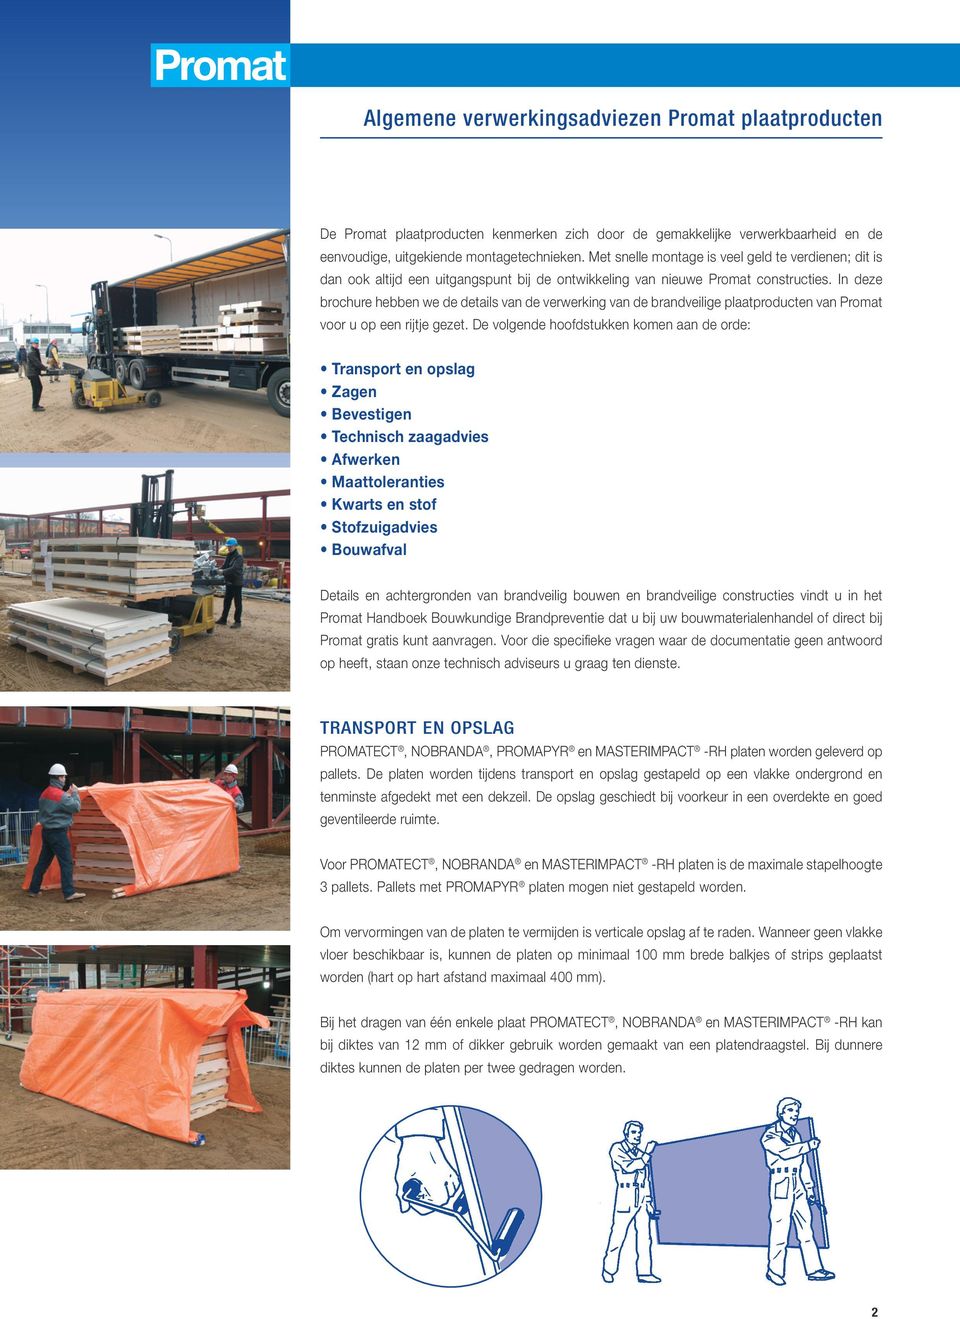 In deze brochure hebben we de details van de verwerking van de brandveilige plaatproducten van Promat voor u op een rijtje gezet.